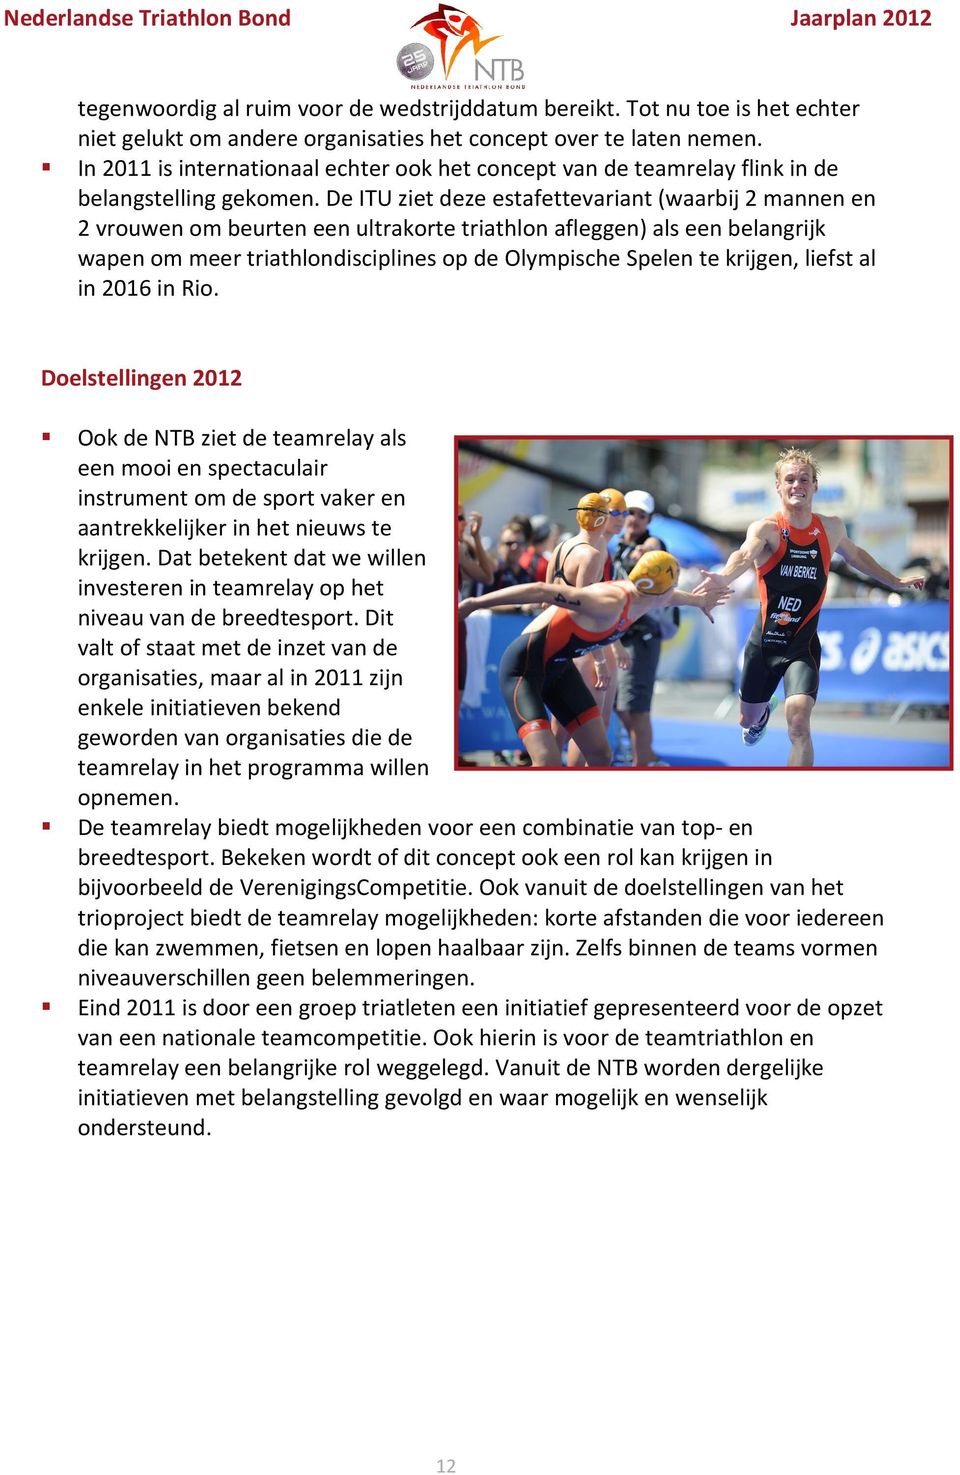 De ITU ziet deze estafettevariant (waarbij 2 mannen en 2 vrouwen om beurten een ultrakorte triathlon afleggen) als een belangrijk wapen om meer triathlondisciplines op de Olympische Spelen te